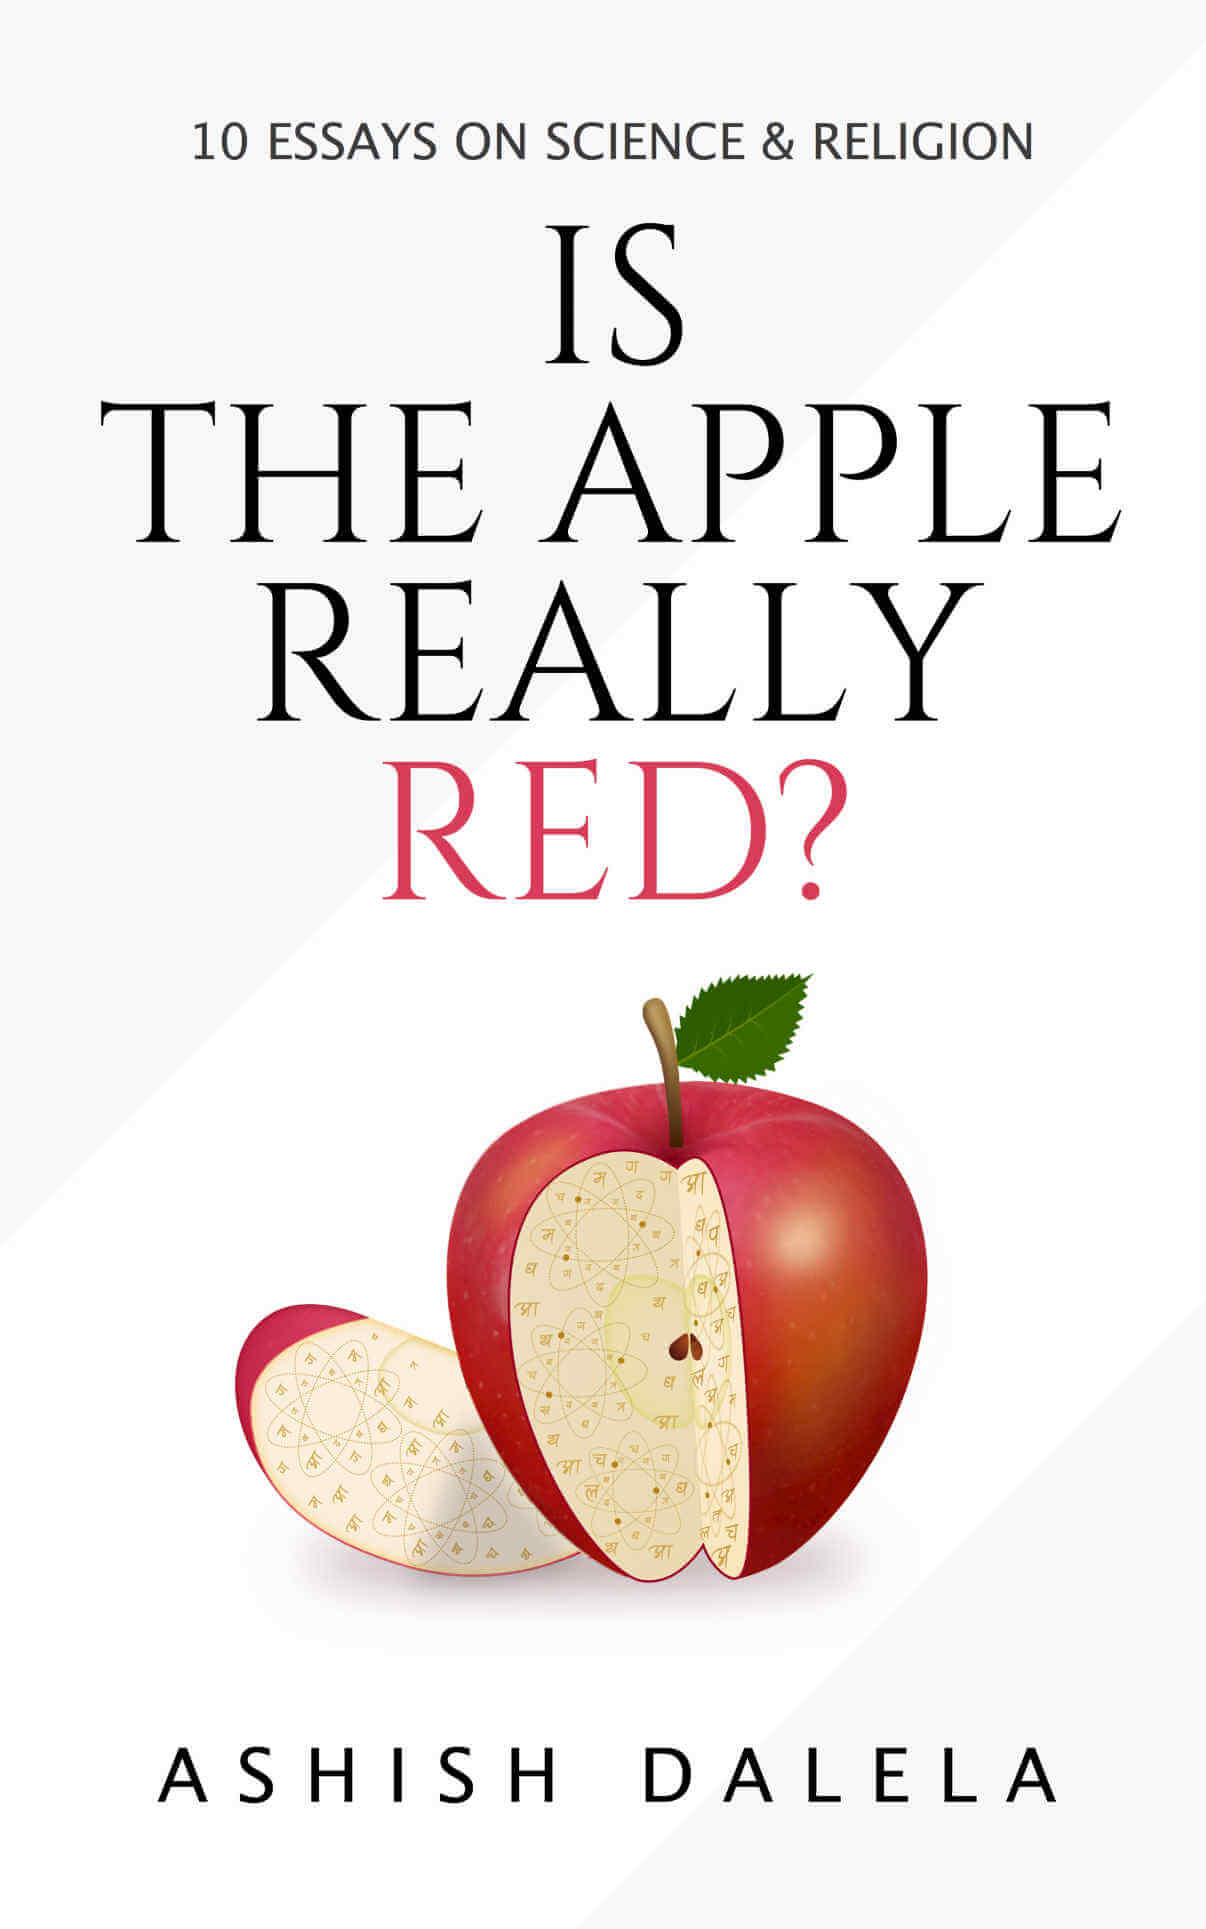 क्या एप्पल वास्तव में लाल है ?: विज्ञान और धर्म पर 10 निबंध